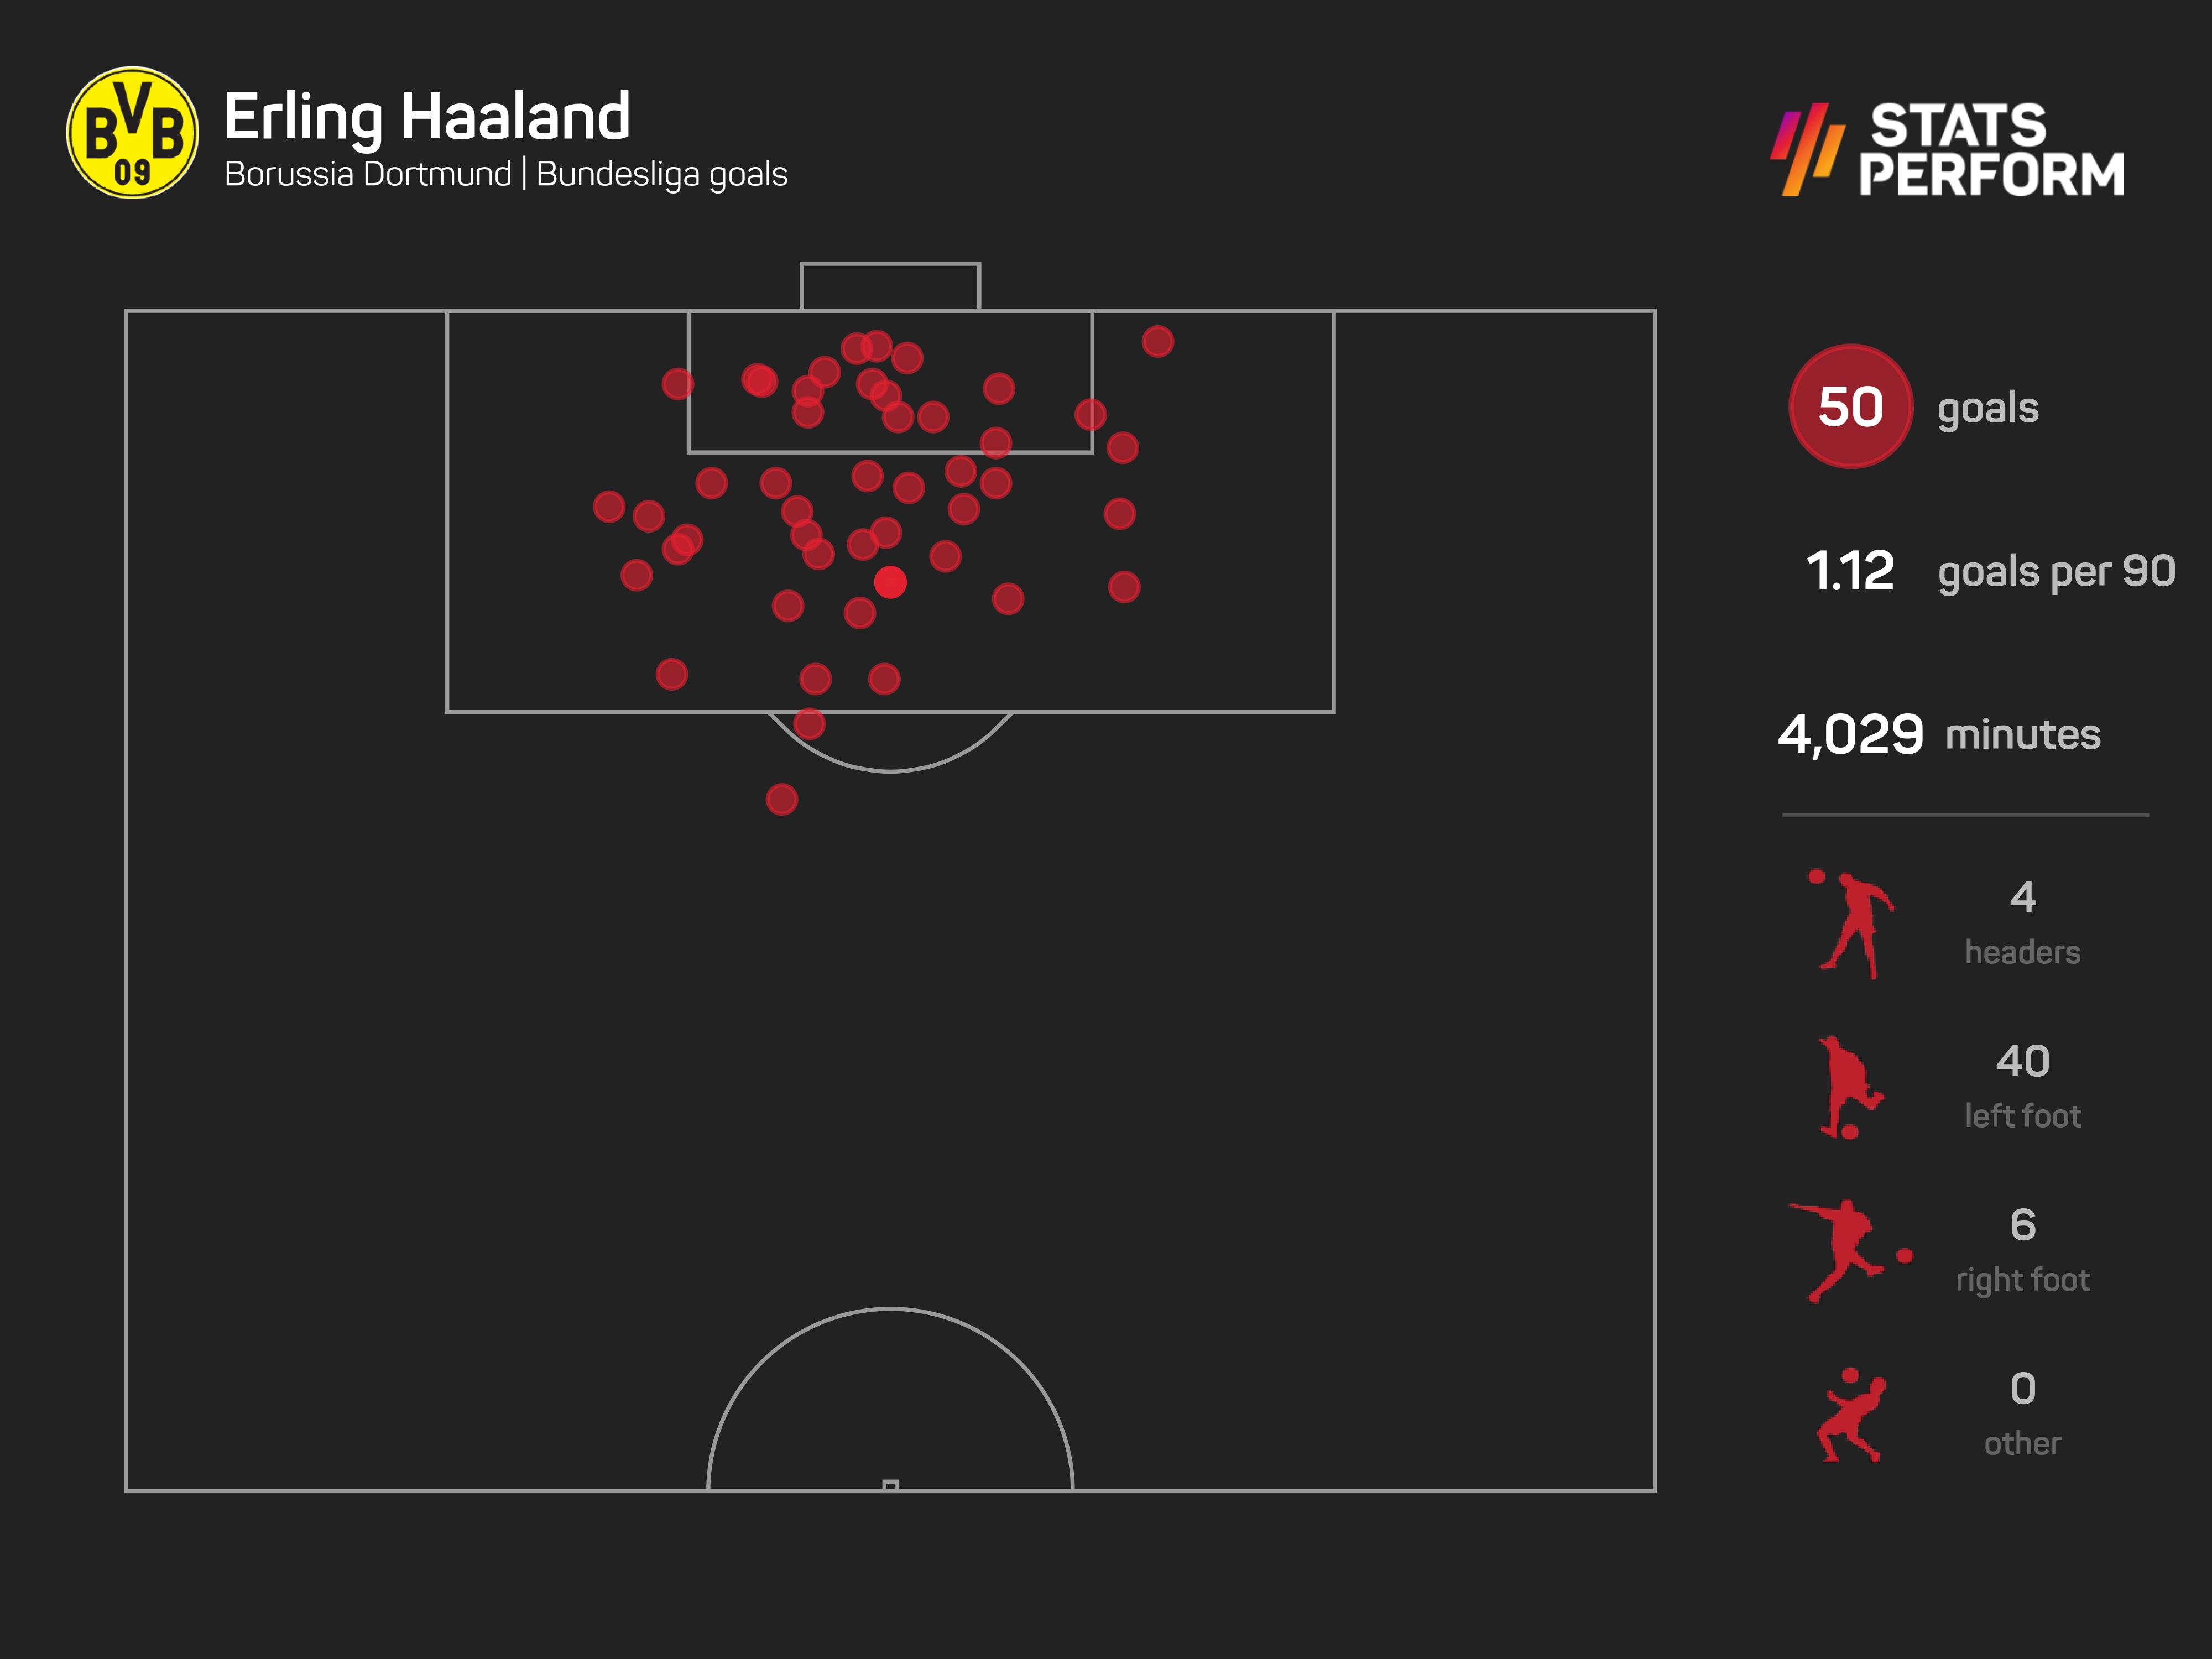 Erling Haaland's 50 Bundesliga goals